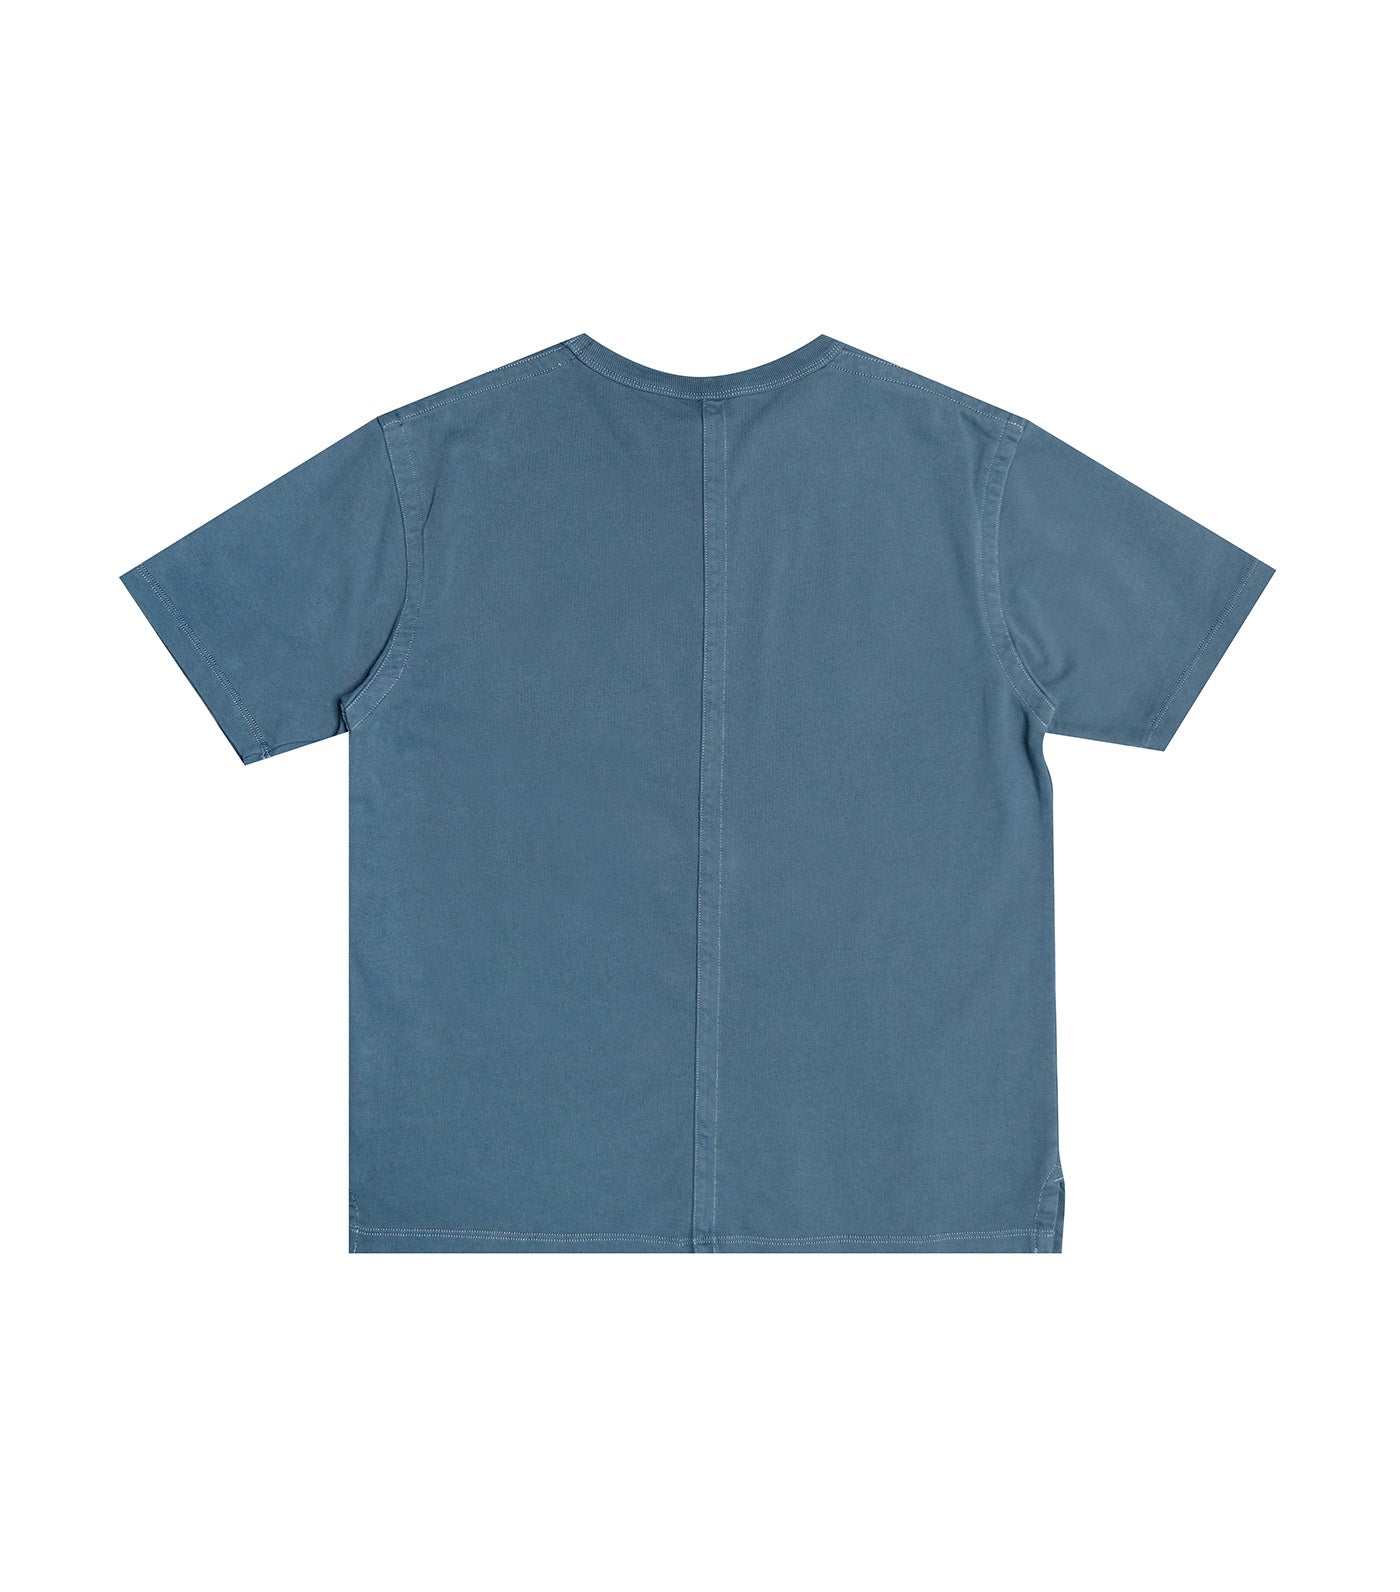 Japan Line Short Sleeve Pocket T-Shirt Teal Blue